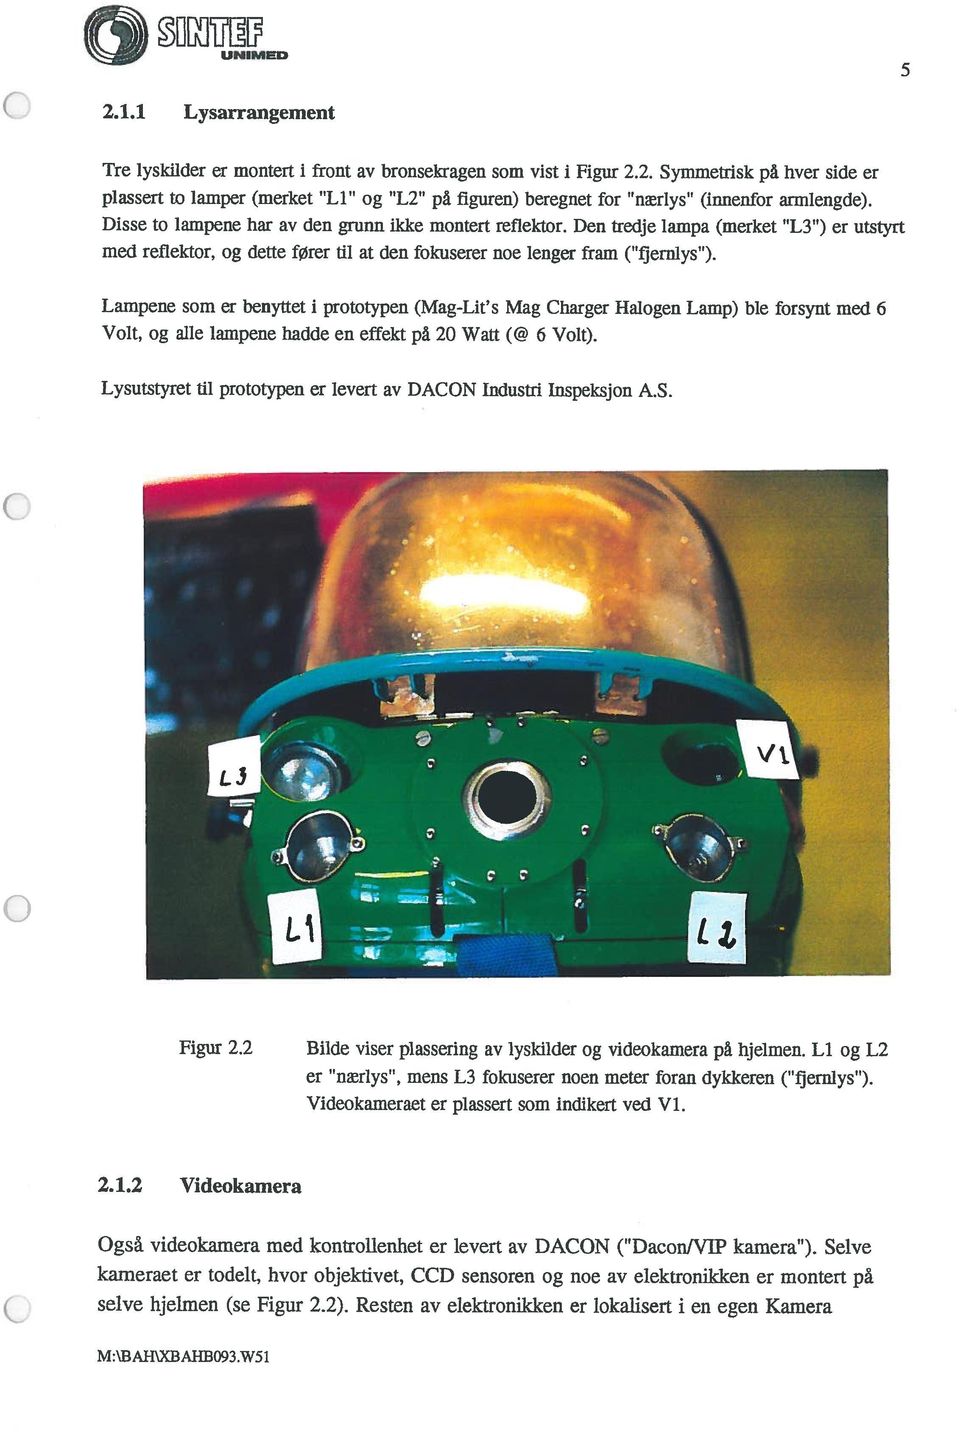 Lampene som er benyttet i prototypen (Mag-Lit s Mag Charger Halogen Lamp) ble forsynt med 6 Volt, og alle lampene hadde en effekt på 20 Watt (@ 6 Volt).